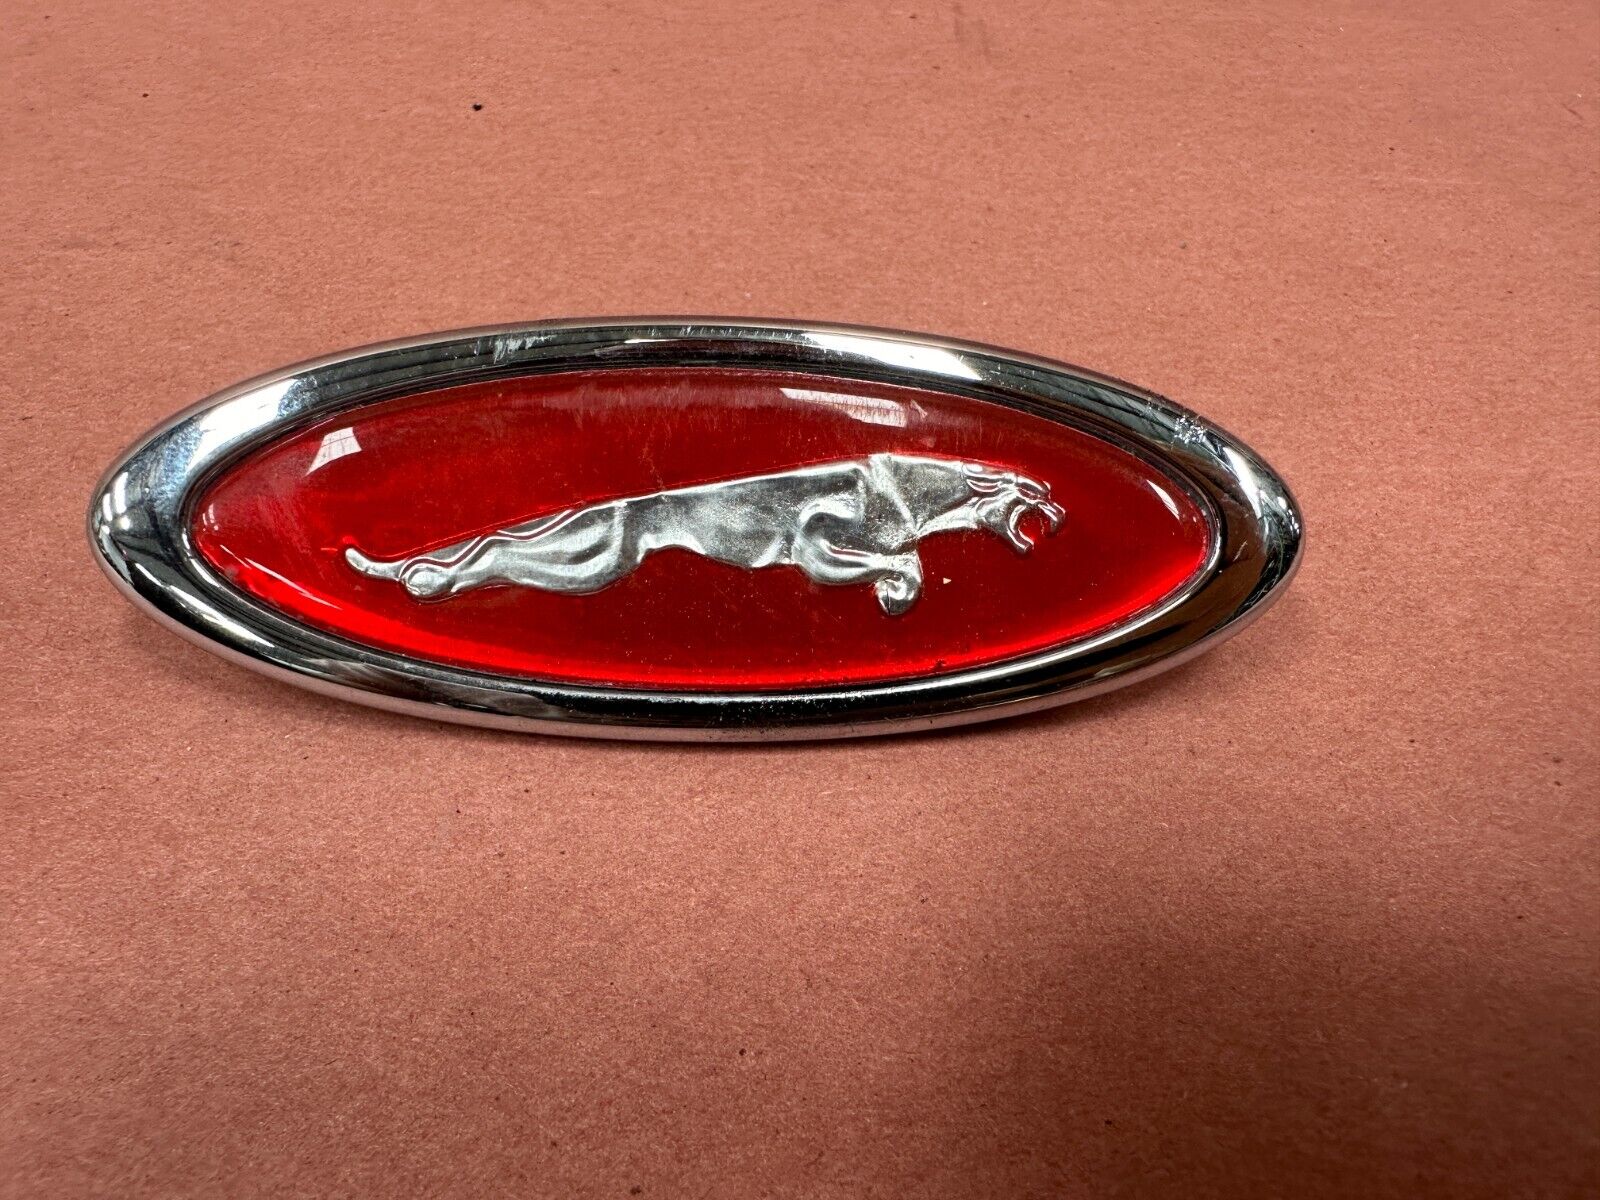 Jaguar XKR Front Right Fender Wing Logo Emblem Badge OEM 86K Miles